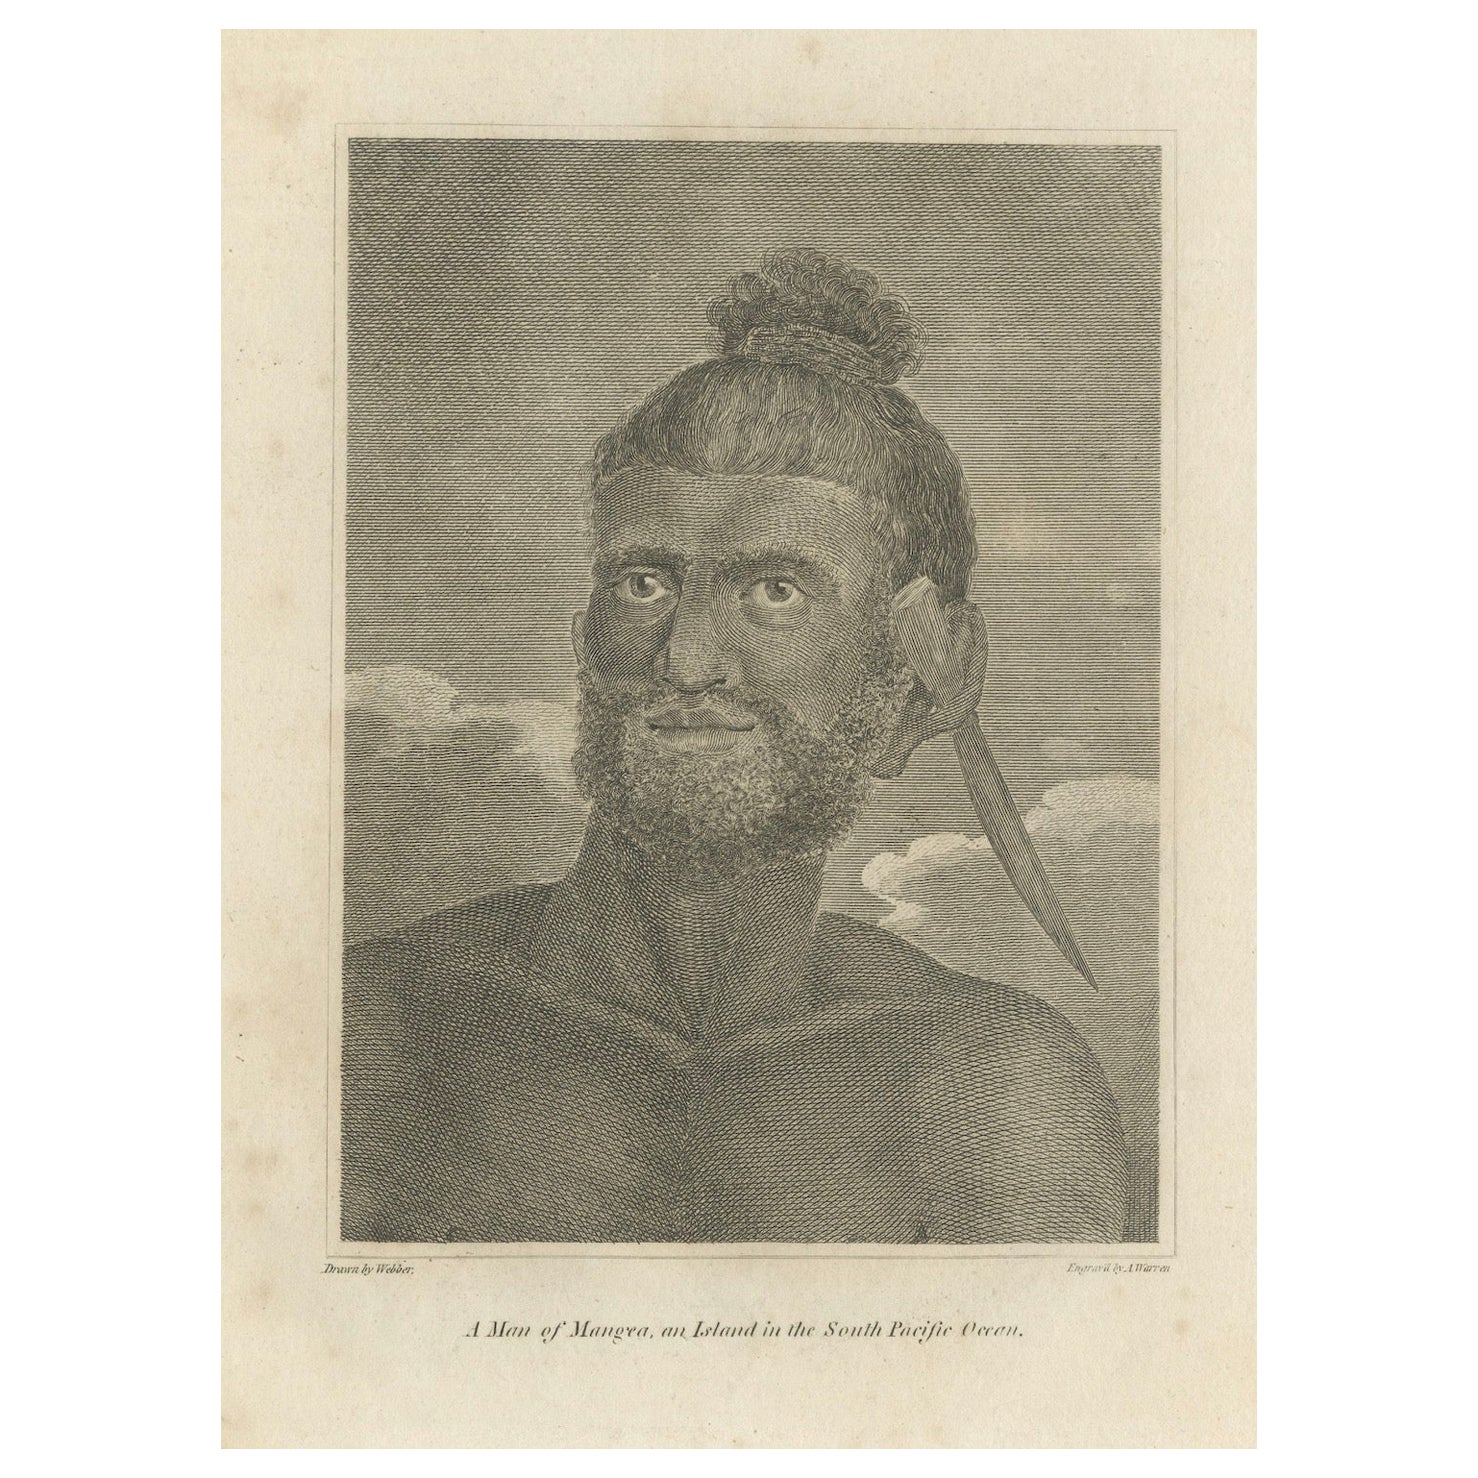 Porträt eines Inselbewohners der Mangean-Inseln im Südpazifik von John Webber, um 1800